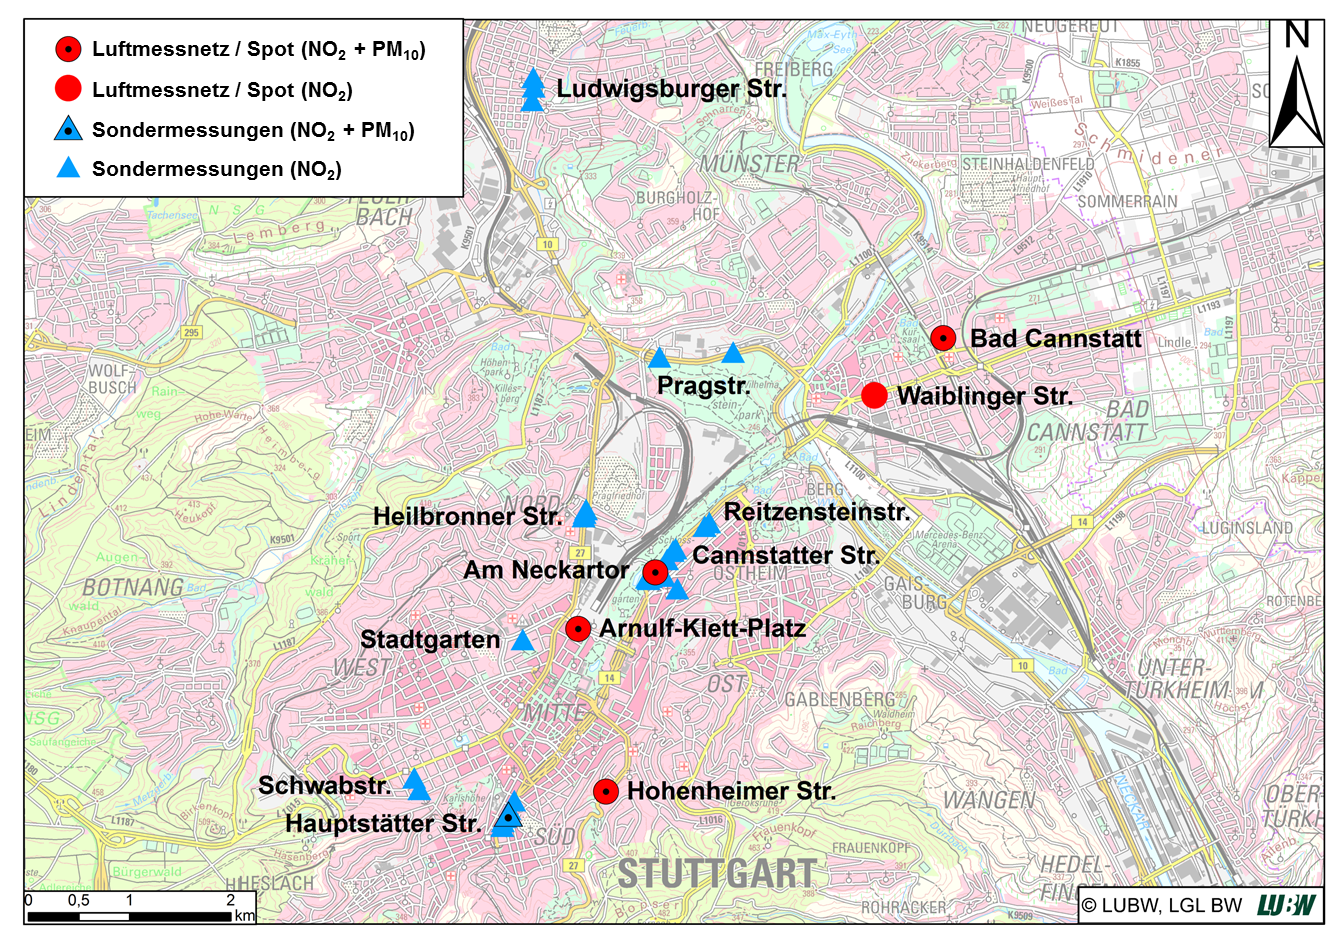 Topografische Karte mit den bestehenden Messorten des Luftmessnetzes und zusätzliche Messorte der Sondermessungen im Stadtgebiet Stuttgart zwischen 2016 und 2018